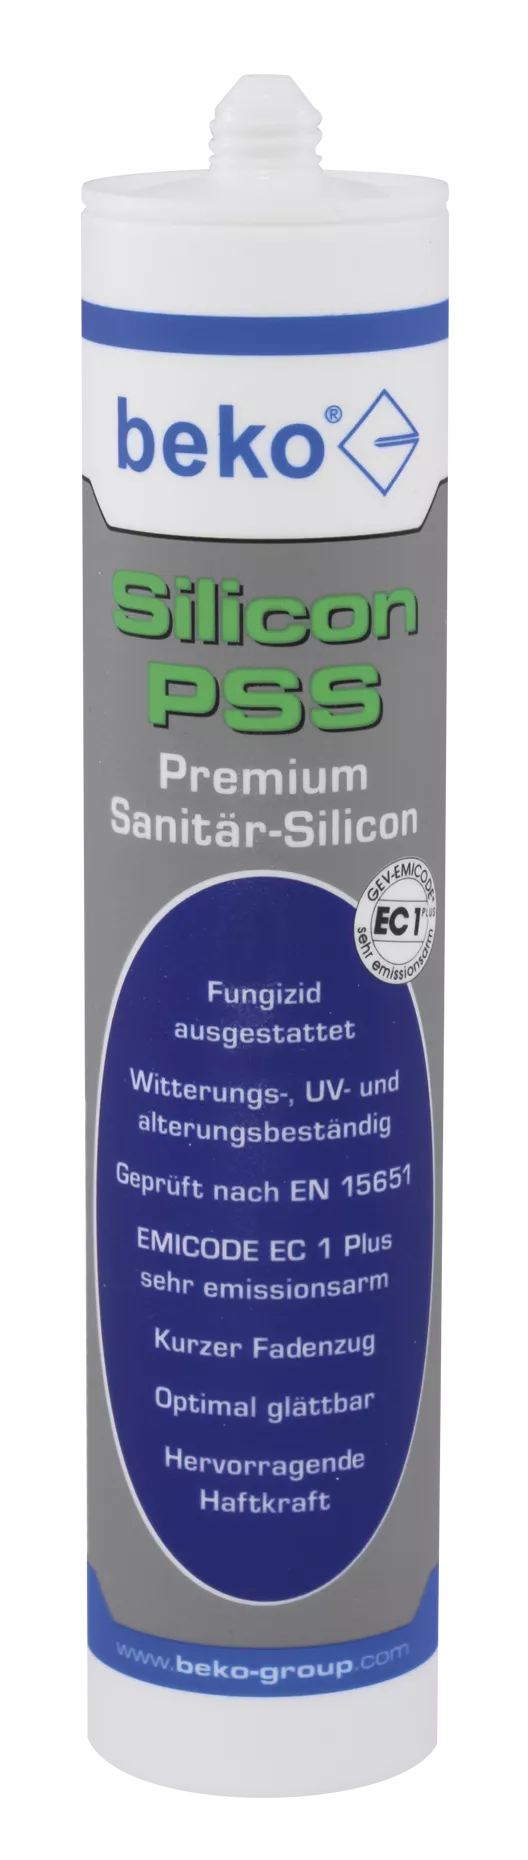 beko Silicon PSS Premium-Sanitär-Silicon